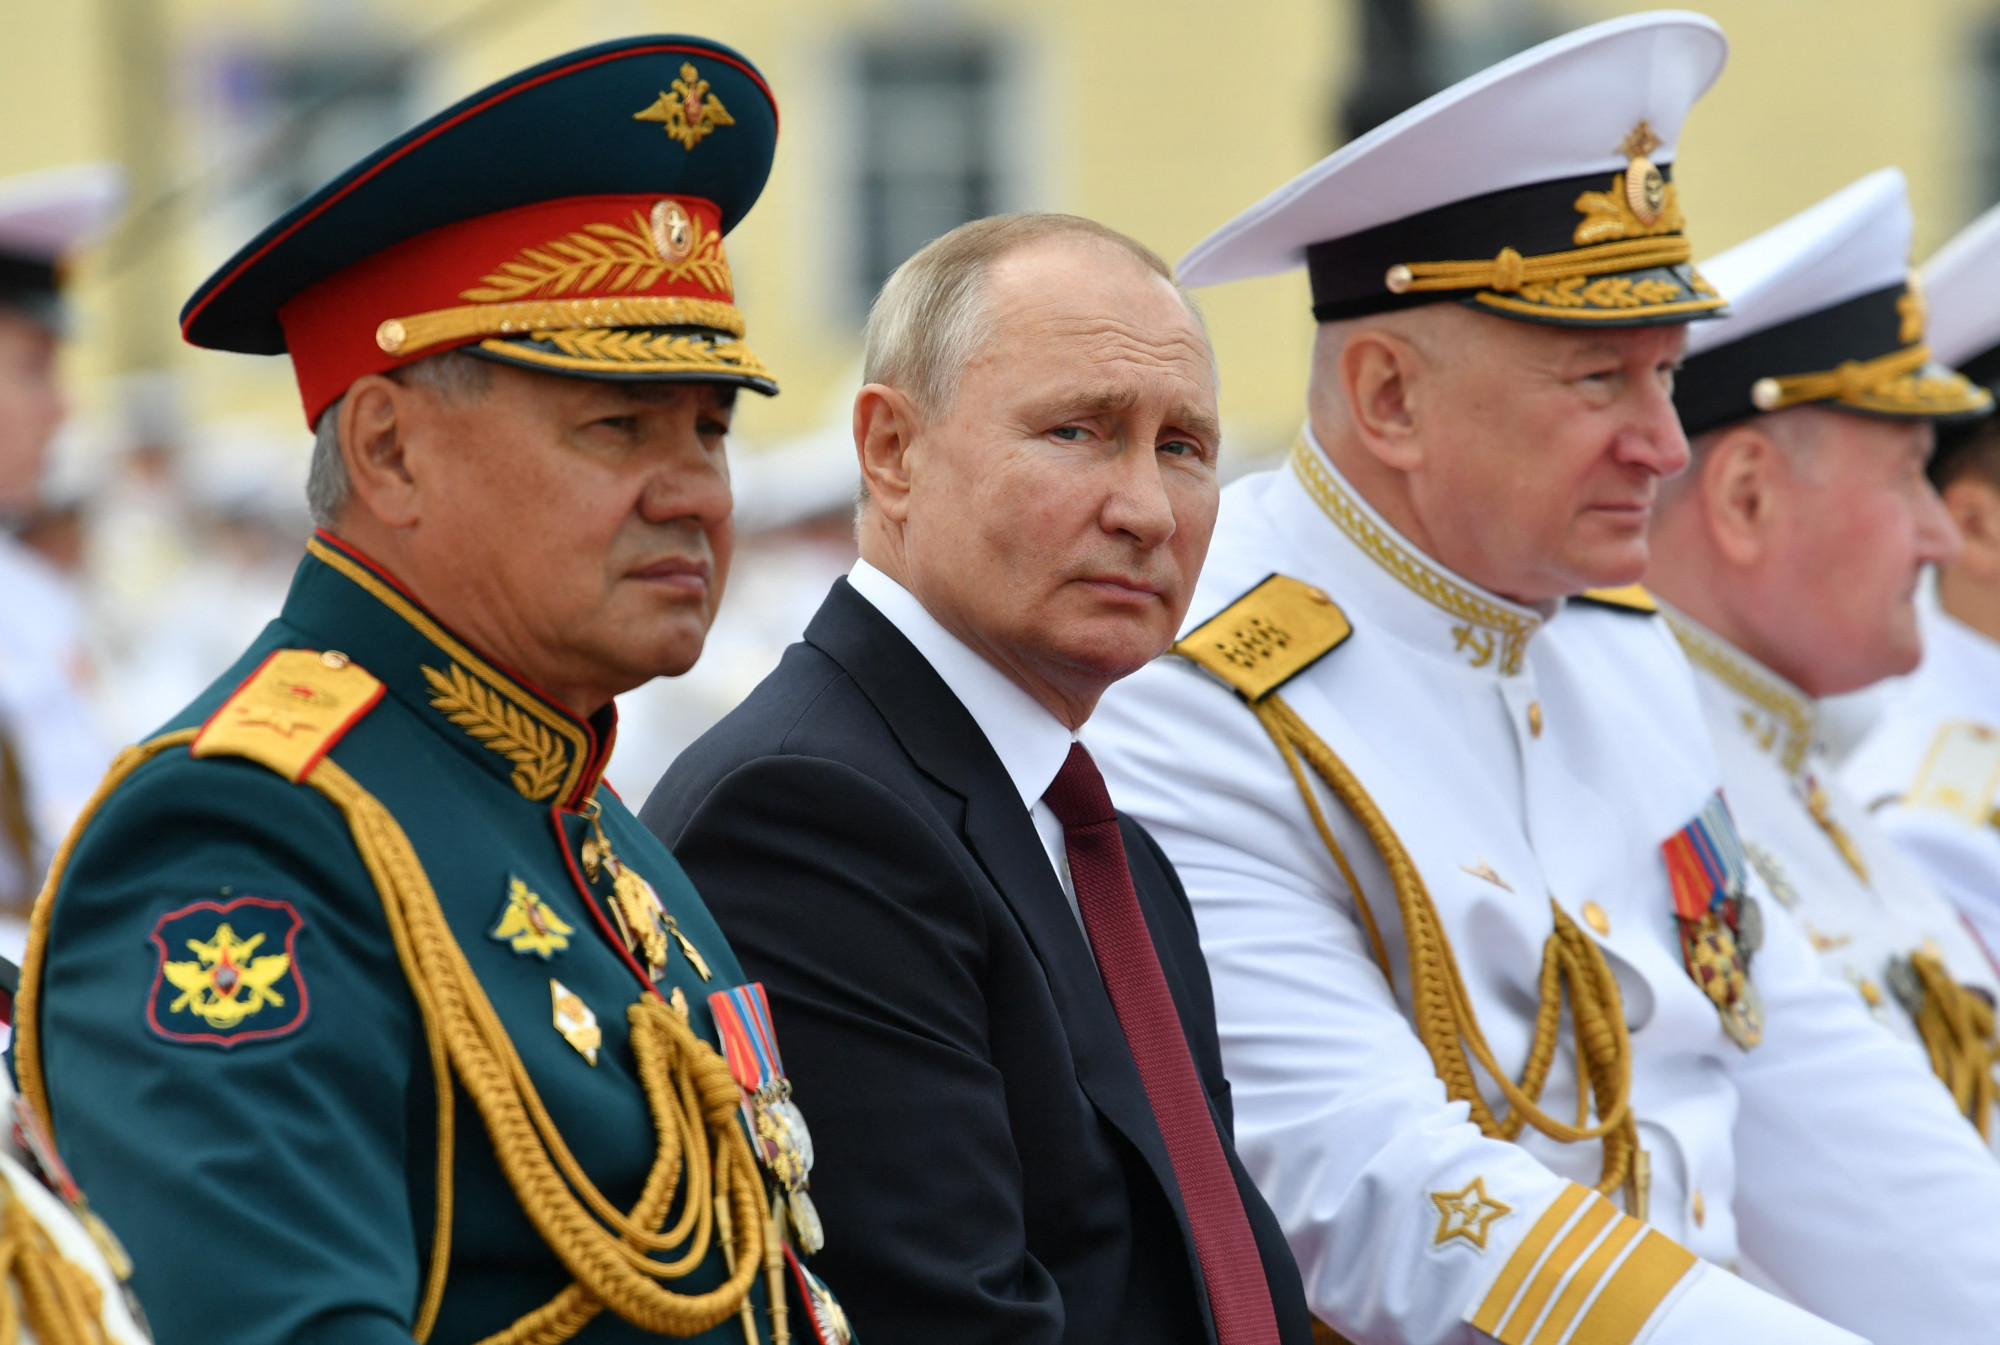 Putyin a háború előtt már nem akart megegyezni az ukránokkal Kreml-közeli források szerint